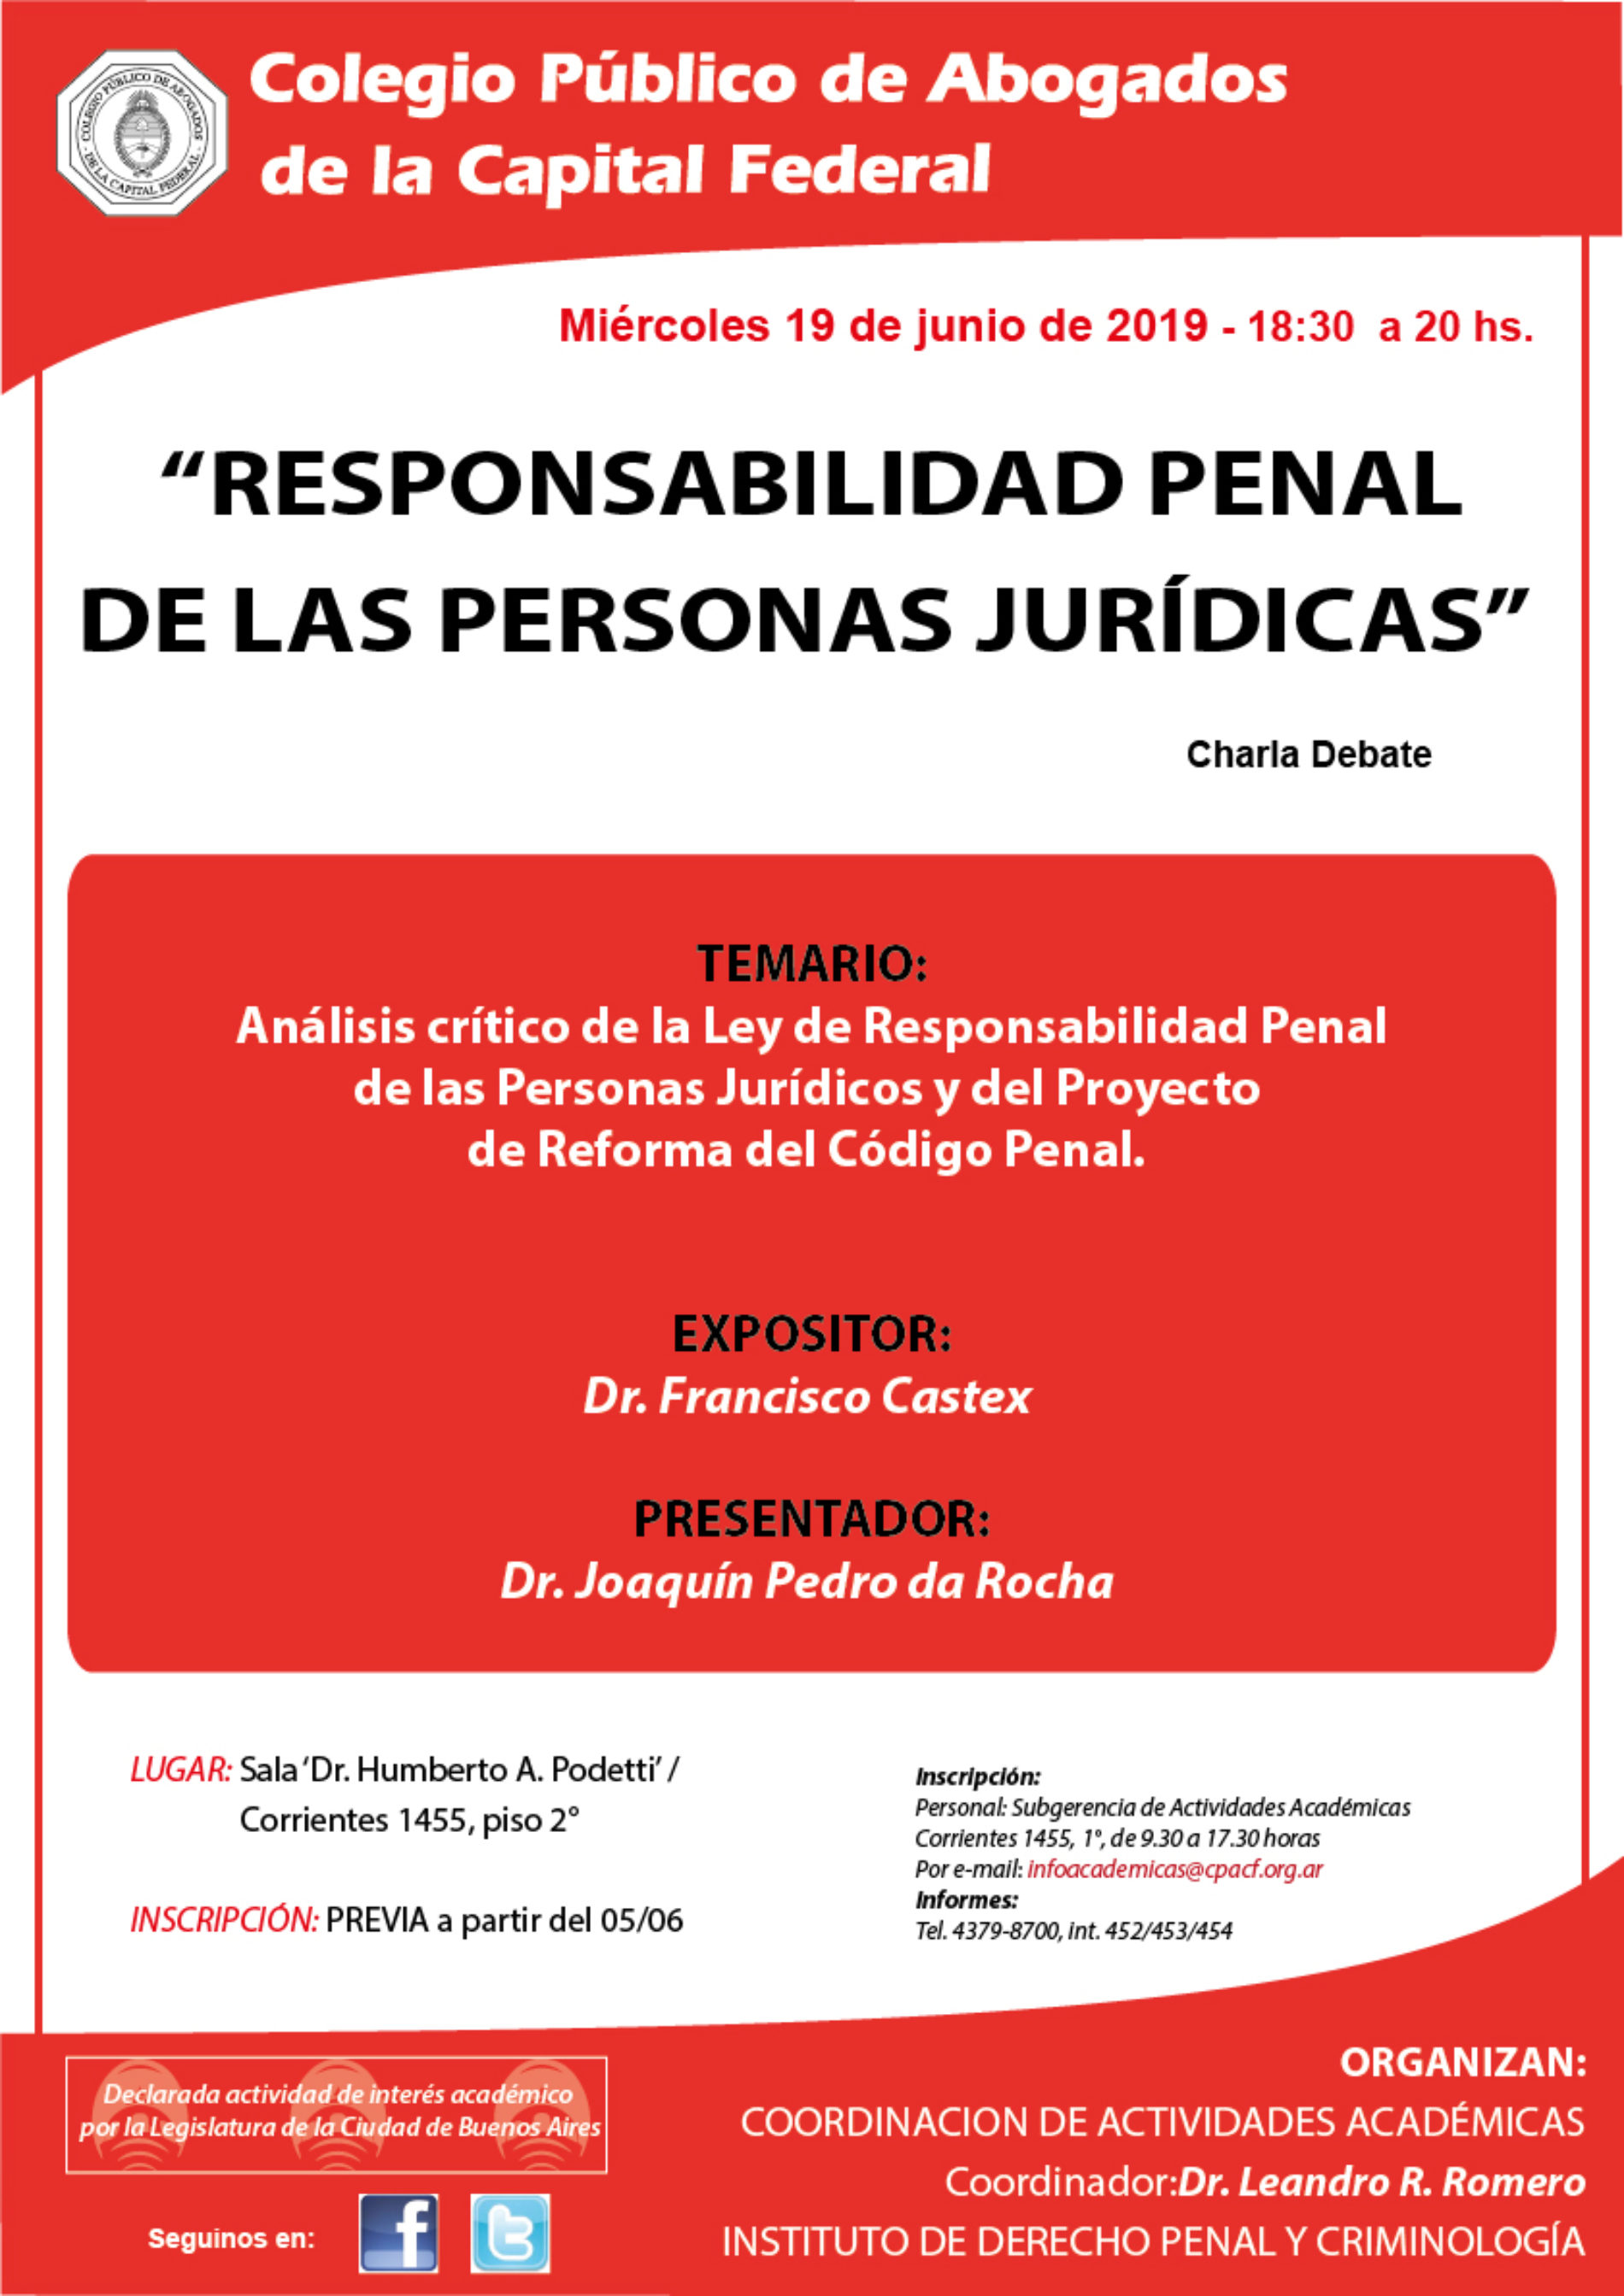 Charla Debate “Responsabilidad Penal de las Personas Jurídicas”